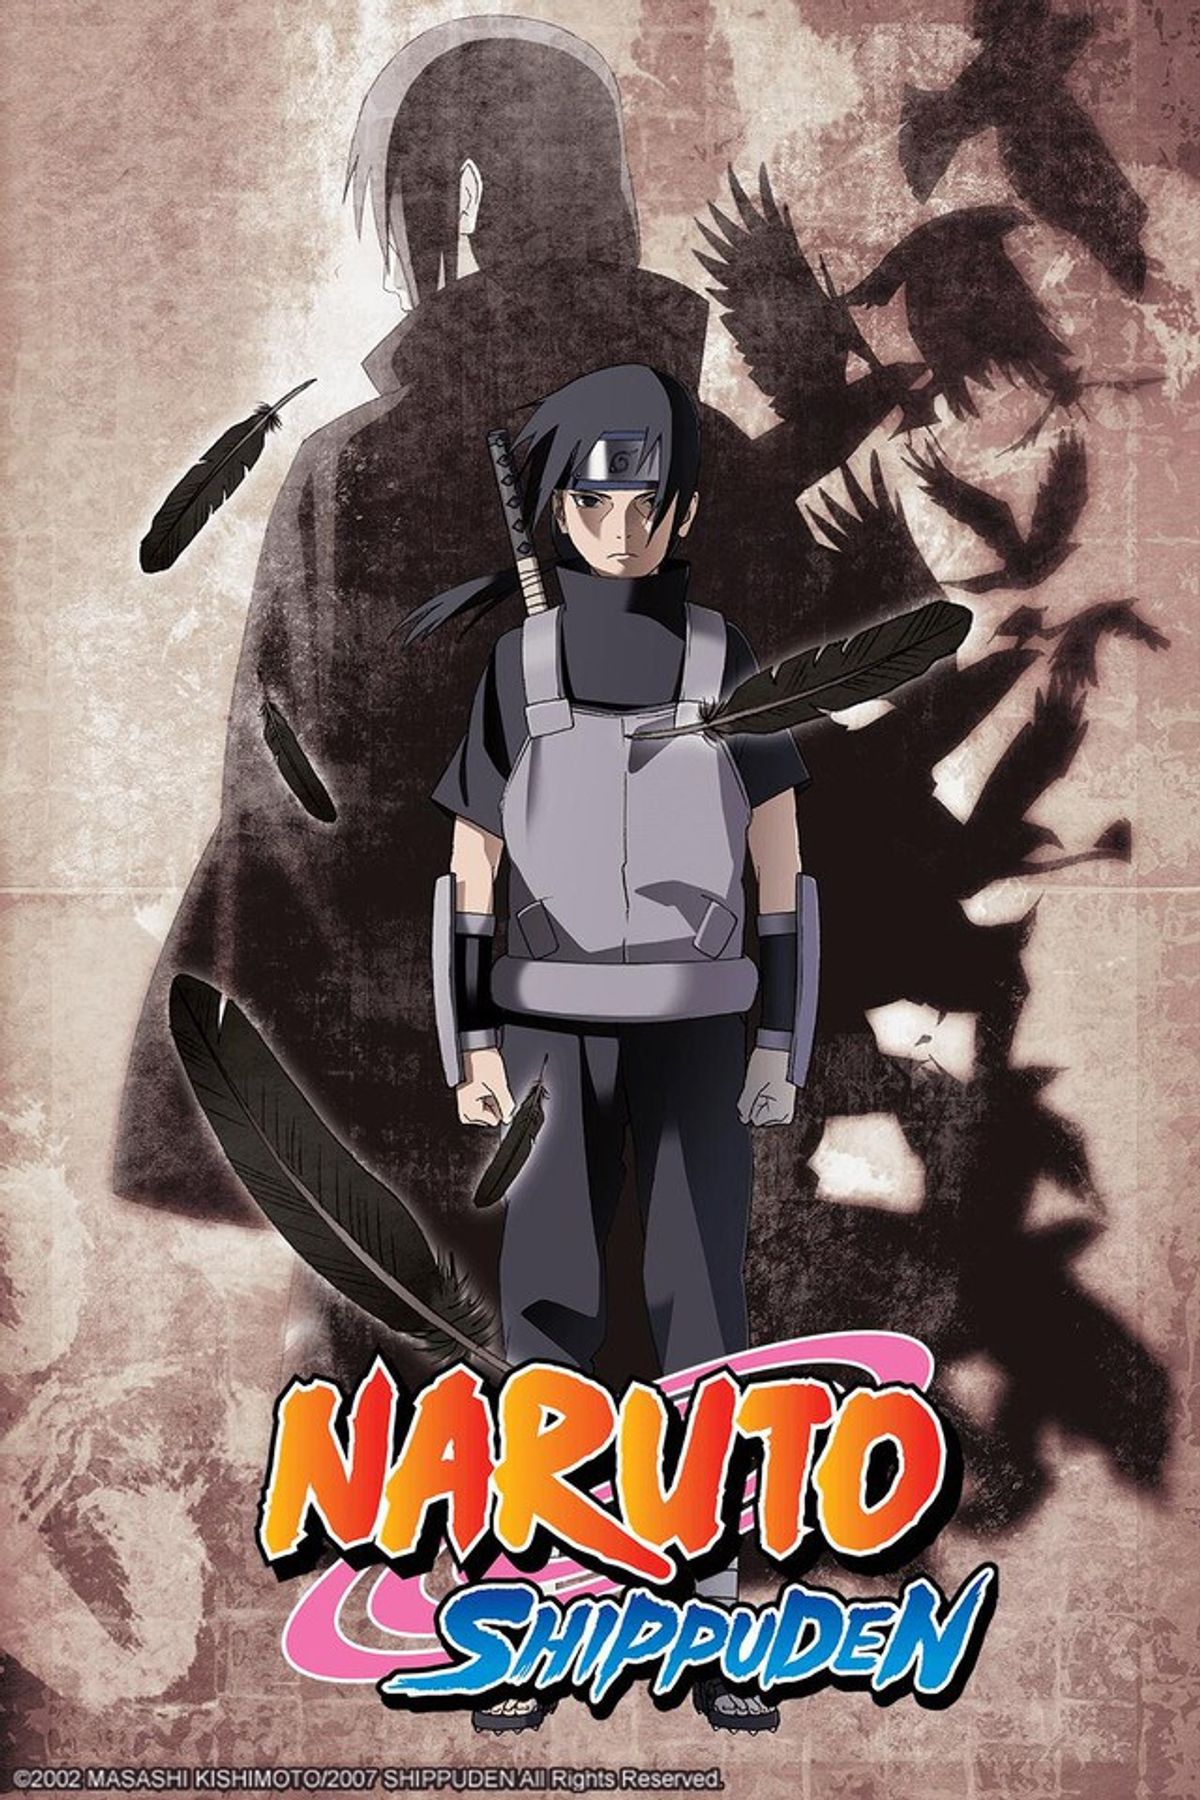 'Naruto Shippuden' Finale News